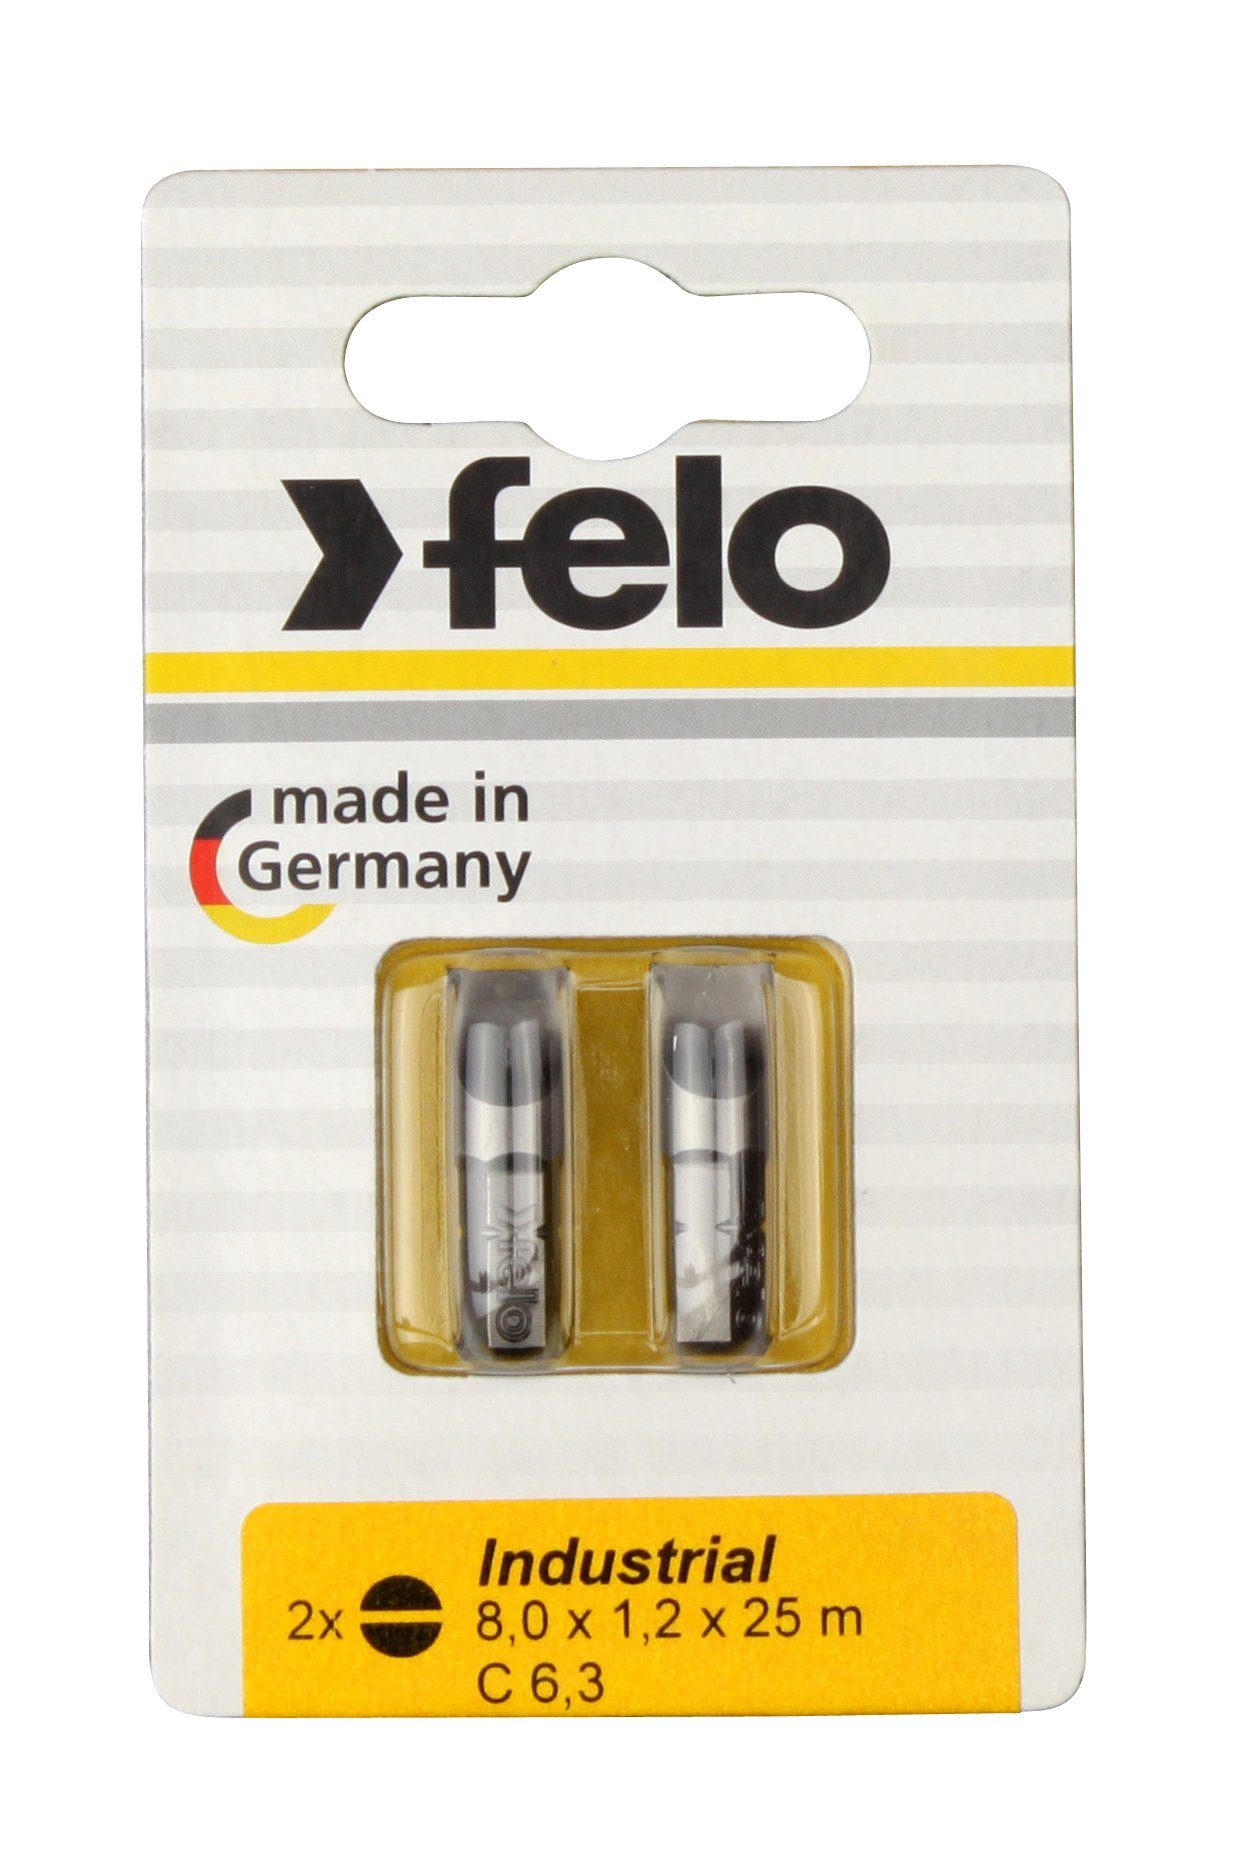 Industrie auf Felo Karte x 2 1,2 25mm, Schlitz-Bit 2x Felo 8,0 x Bit, 6,3 C Stk